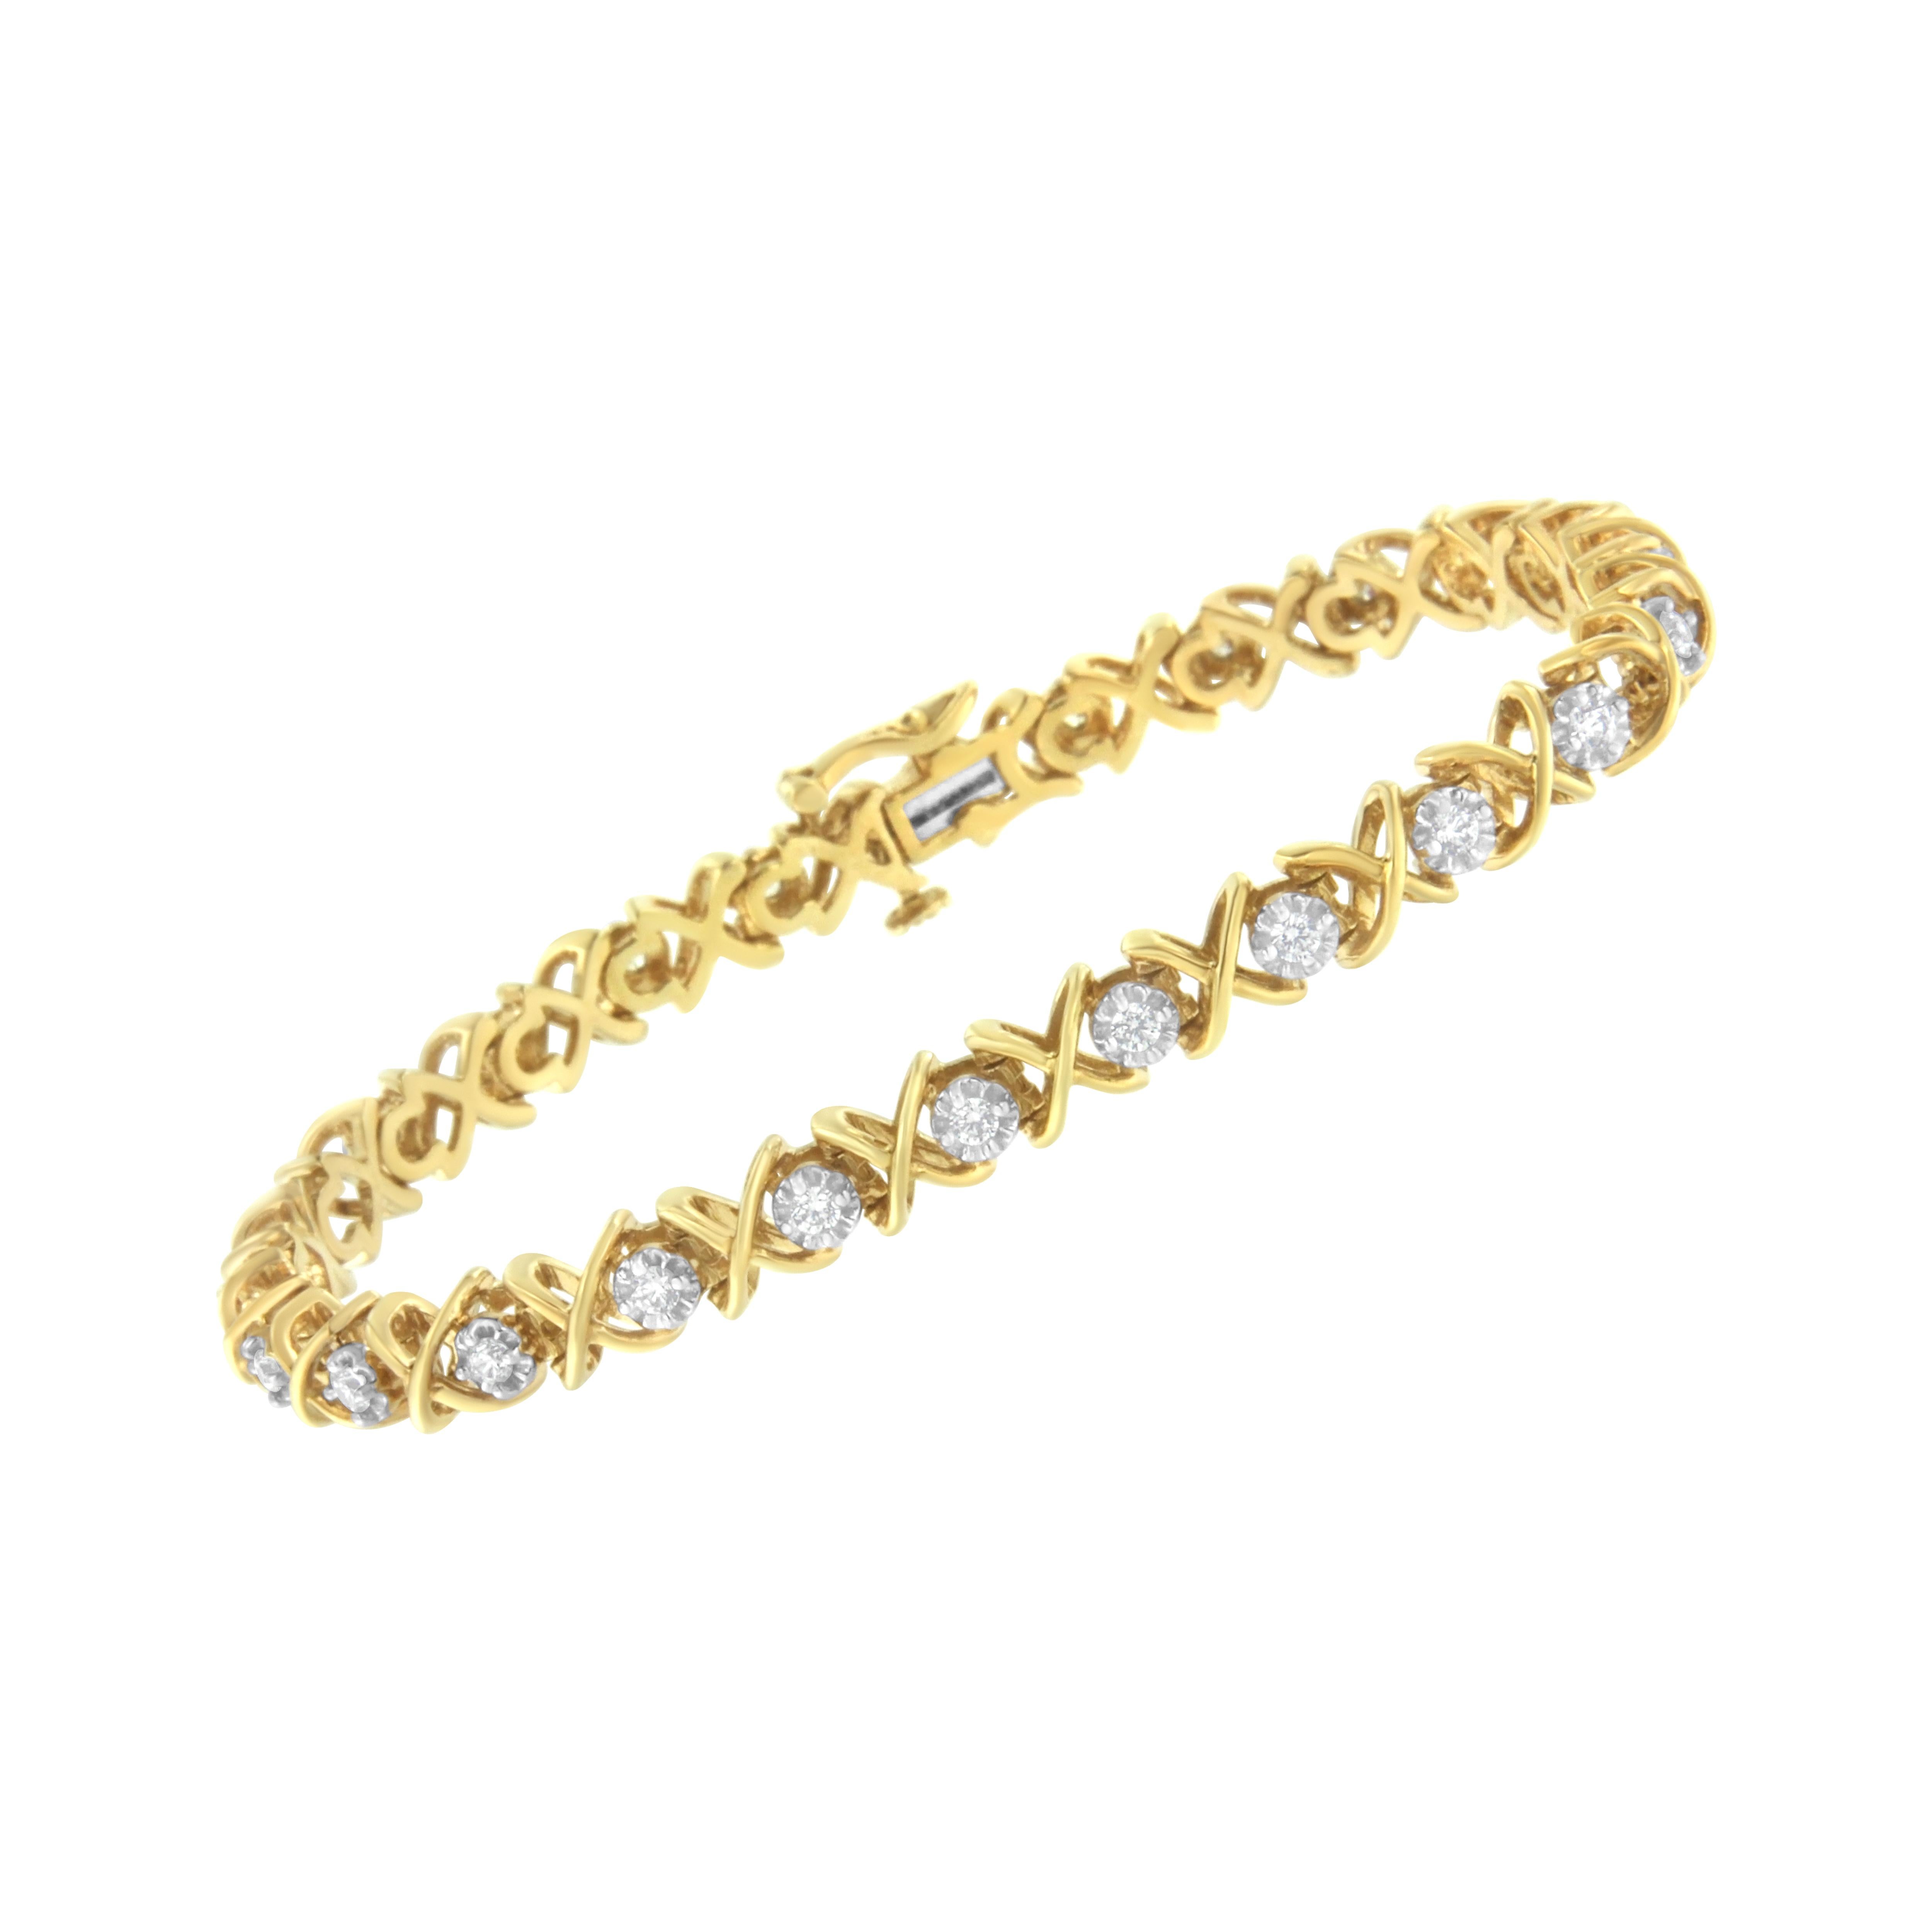 25k gold bracelet